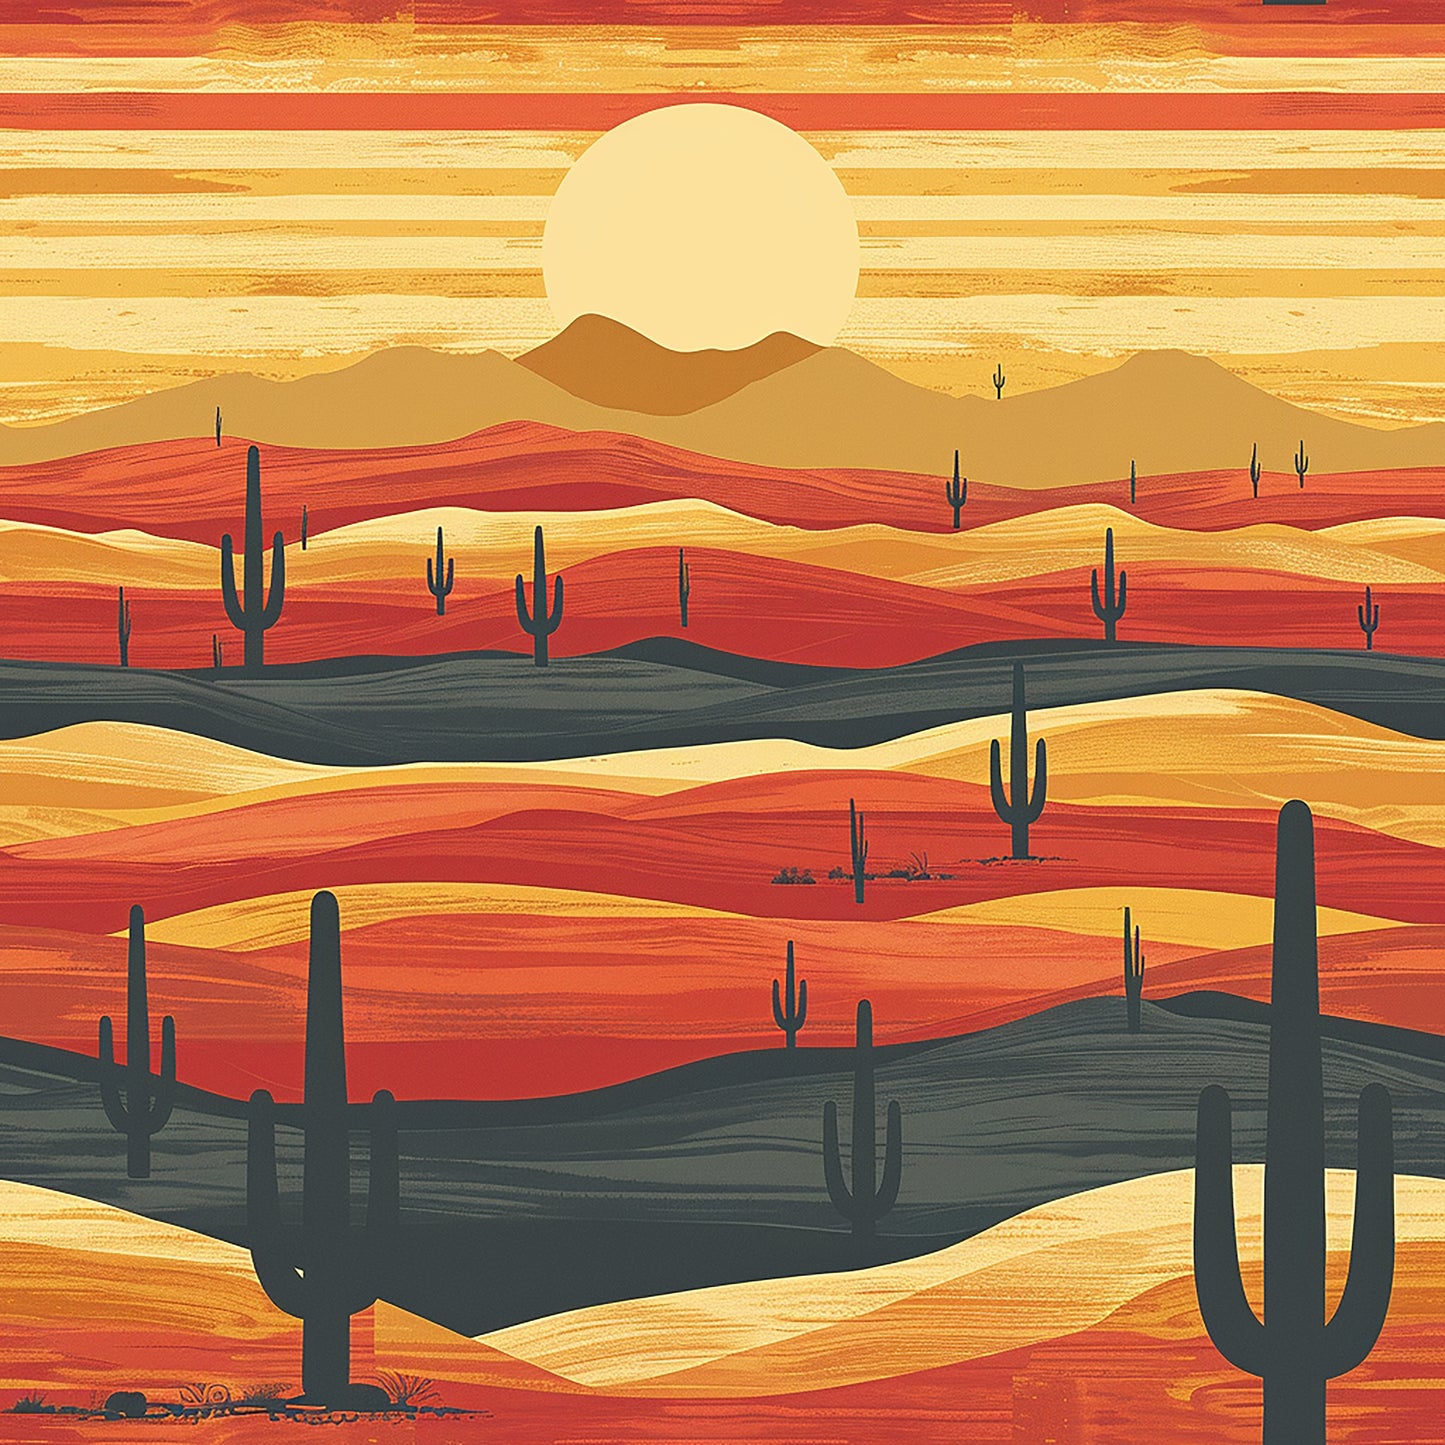 Desert Sunset - 12 Design options - 3 size options